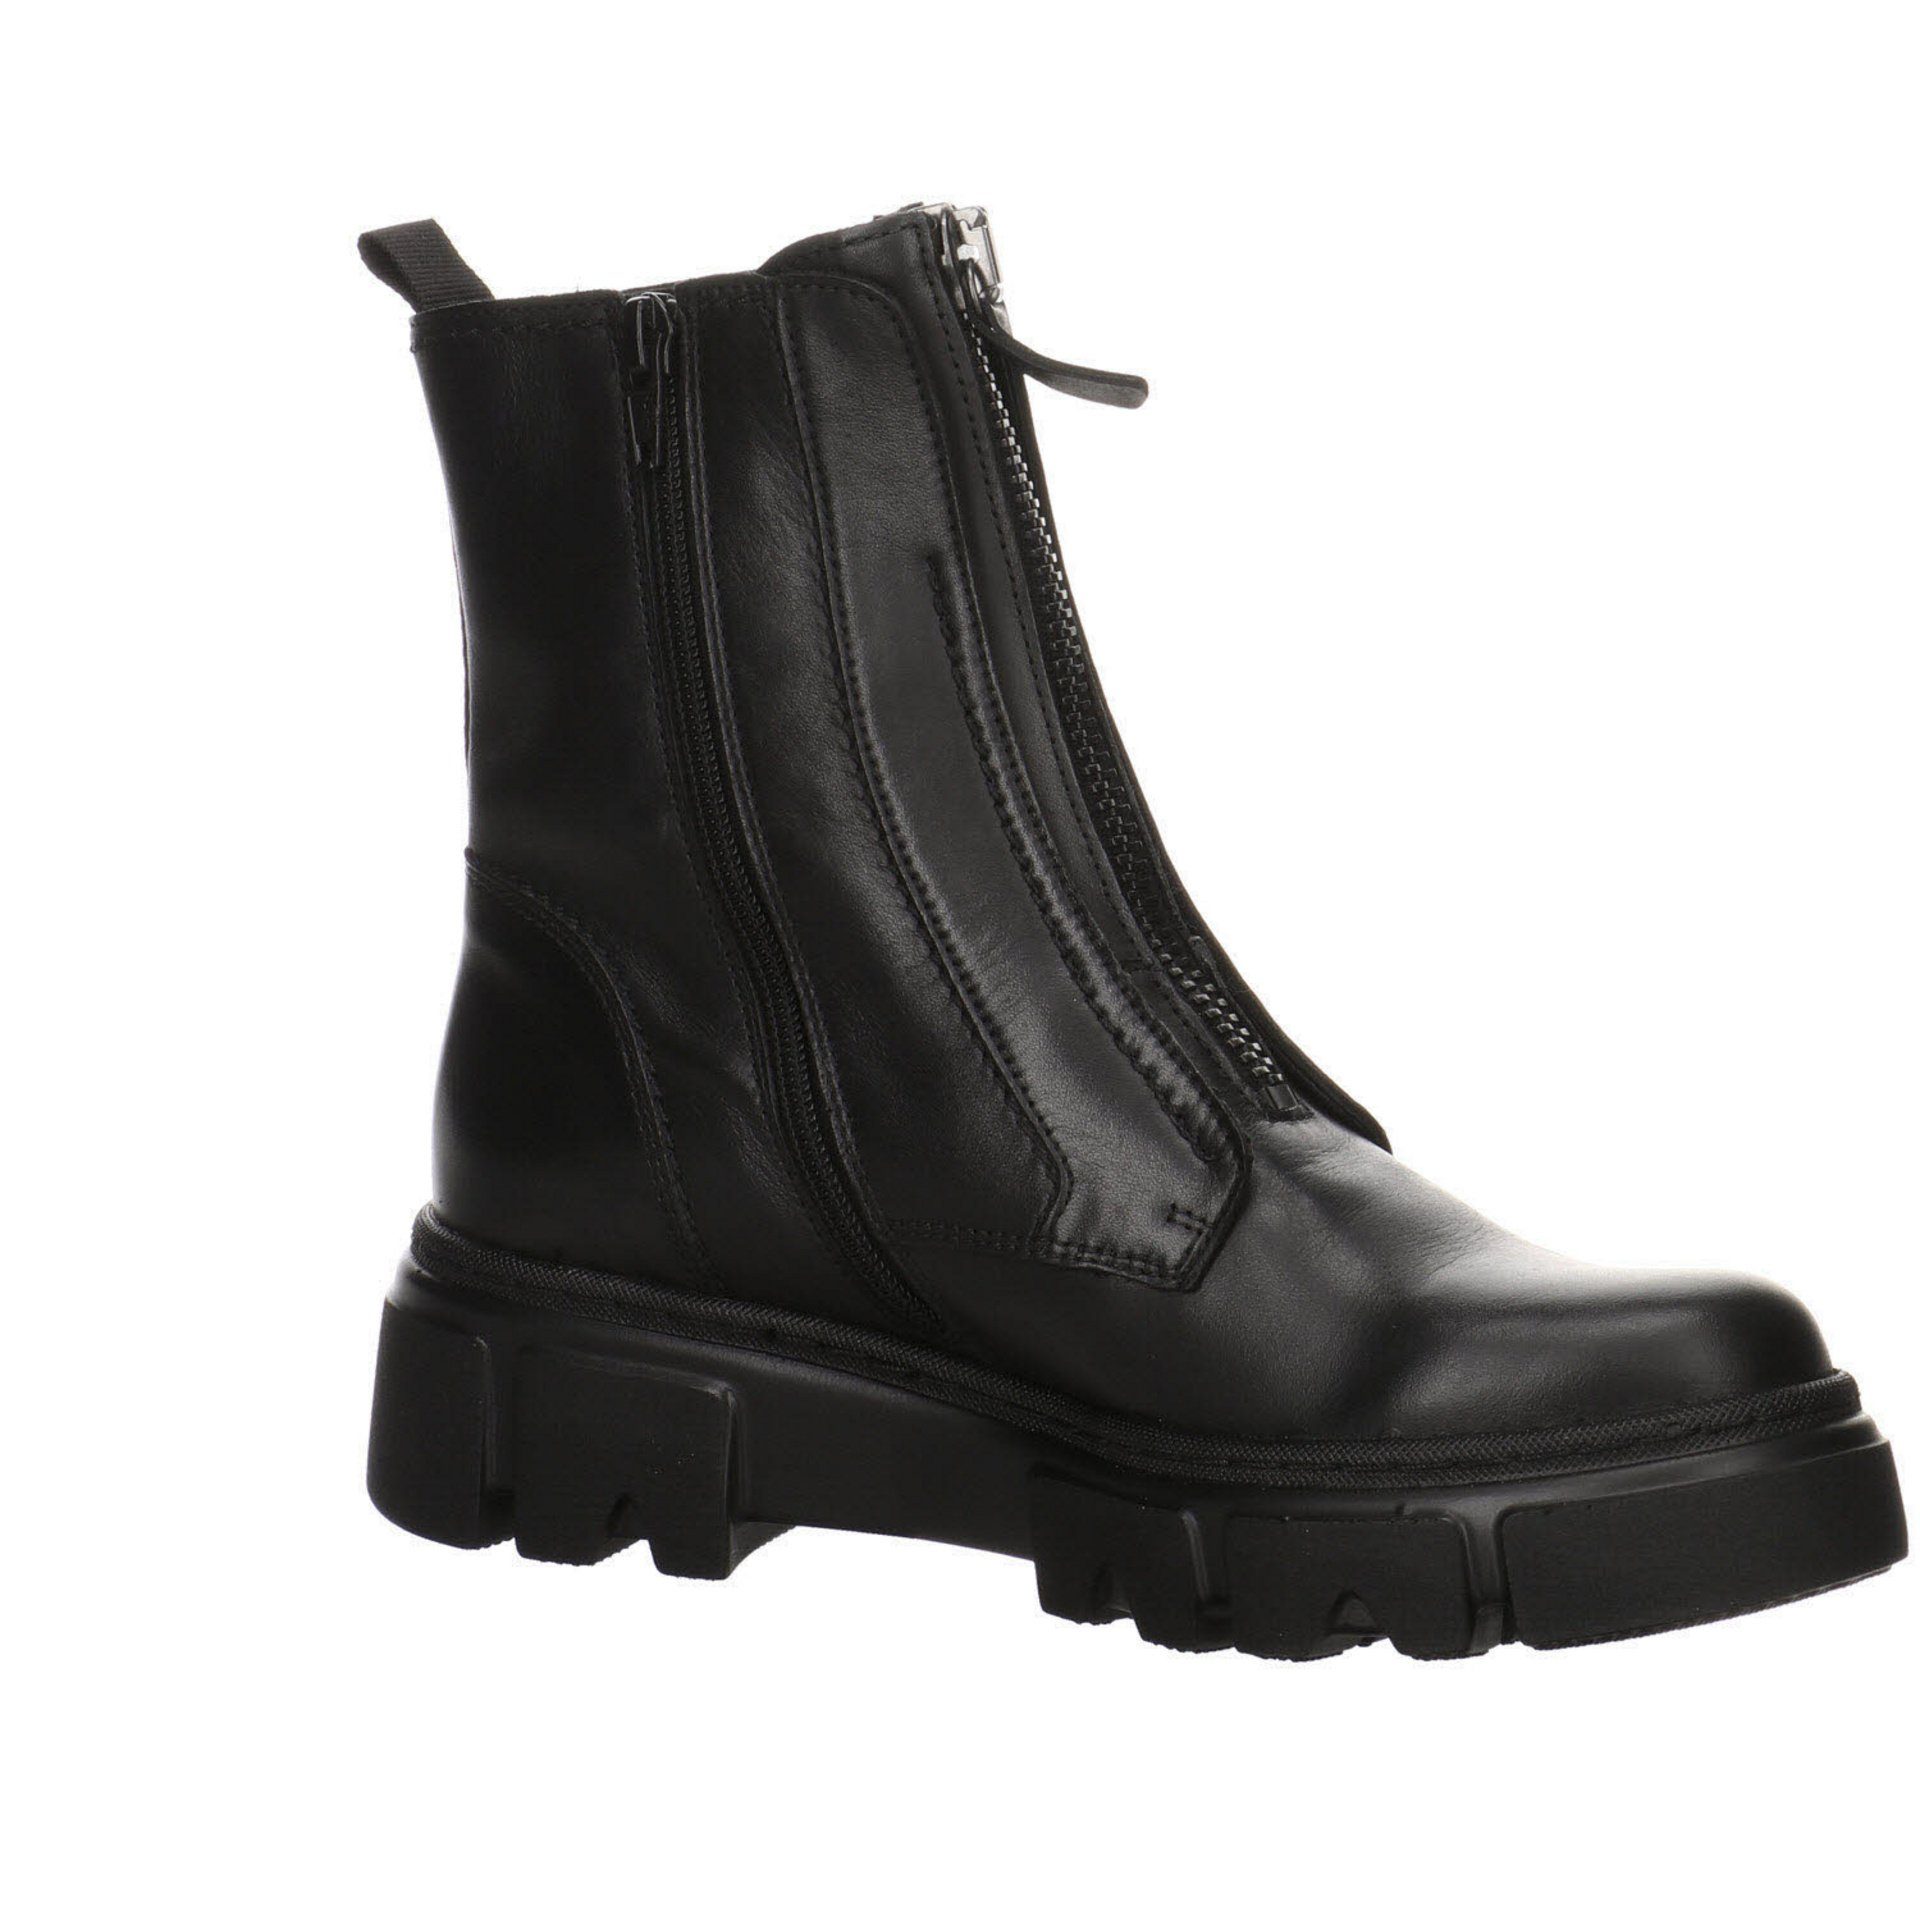 Damen Gabor Stiefelette Boots Stiefeletten Freizeit Elegant schwarz(altsilber) Schuhe Glattleder